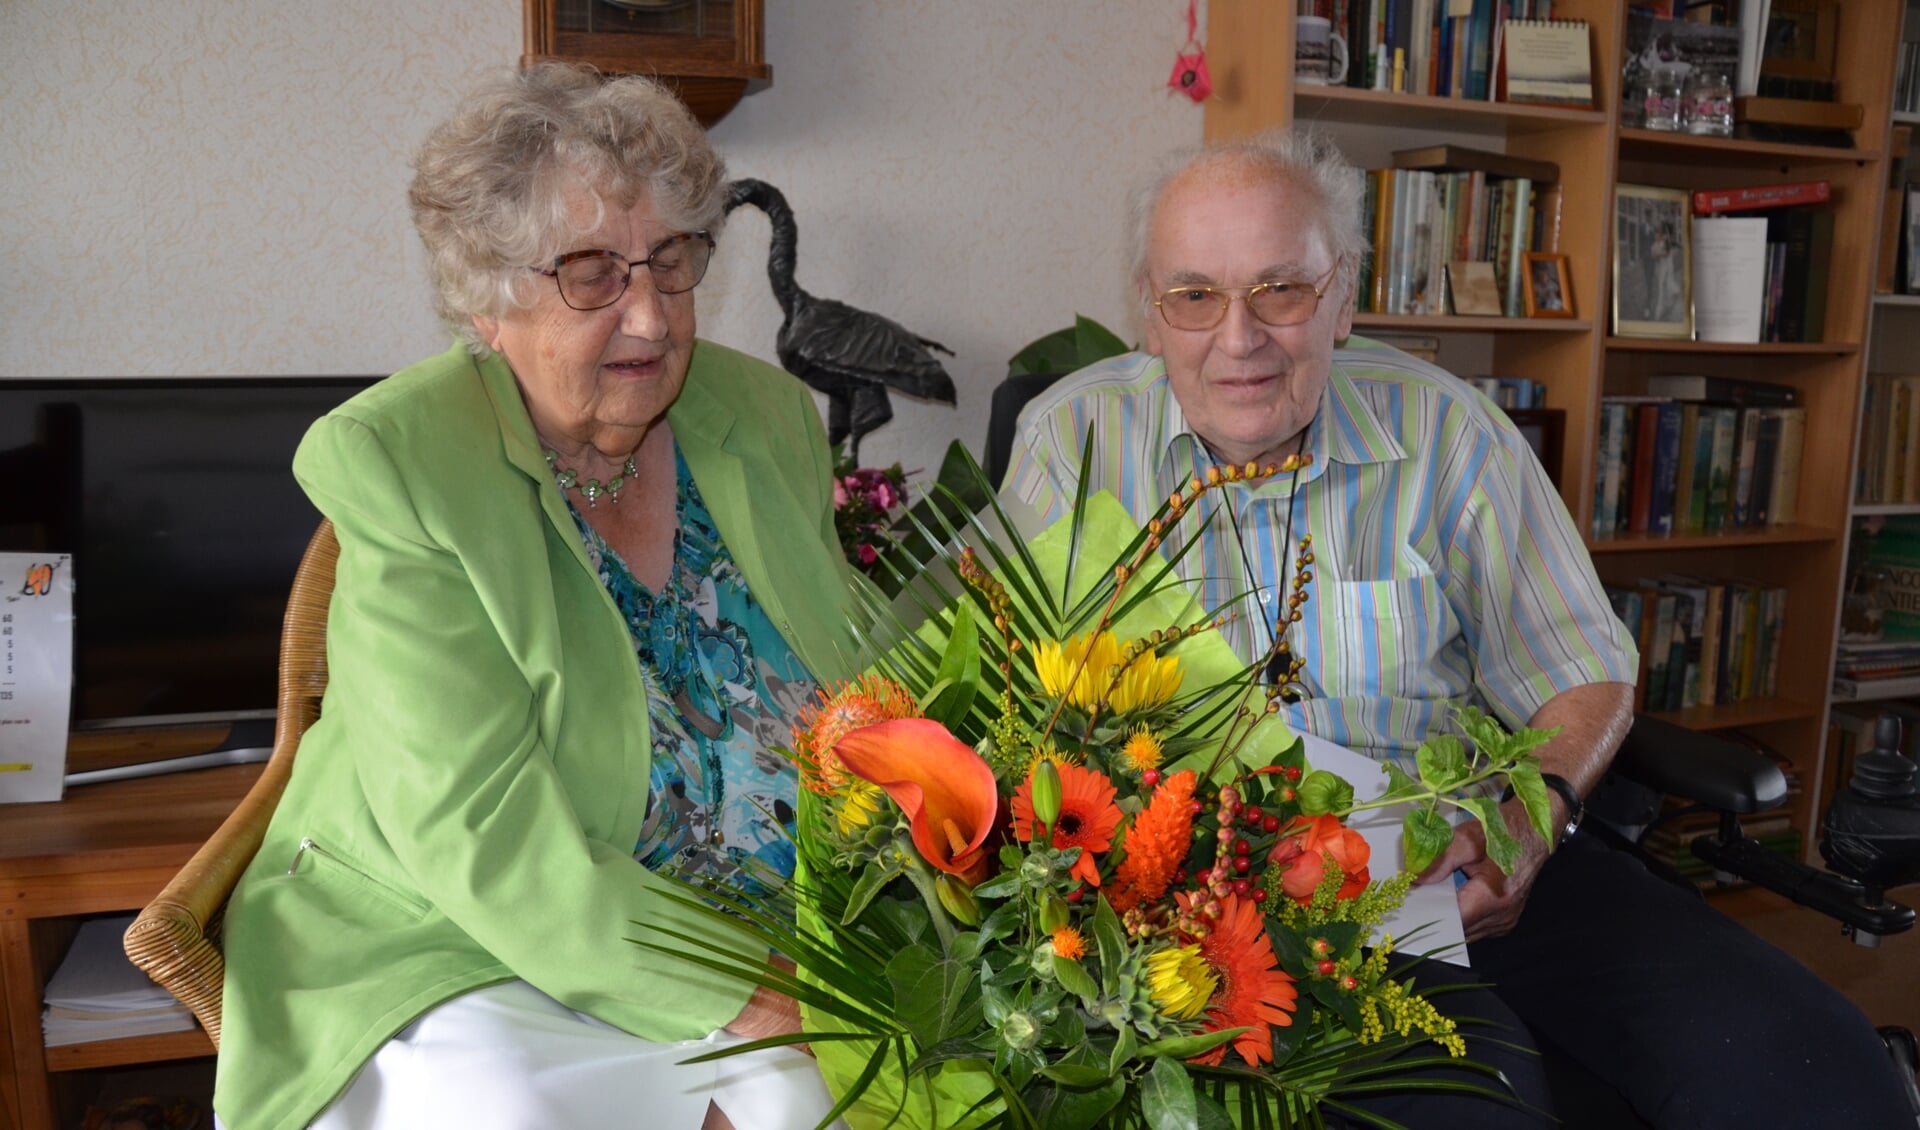 Theo kon zijn diamanten bruiloft met Ria gelukkig even thuis vieren en ontving bloemen van de burgemeester.